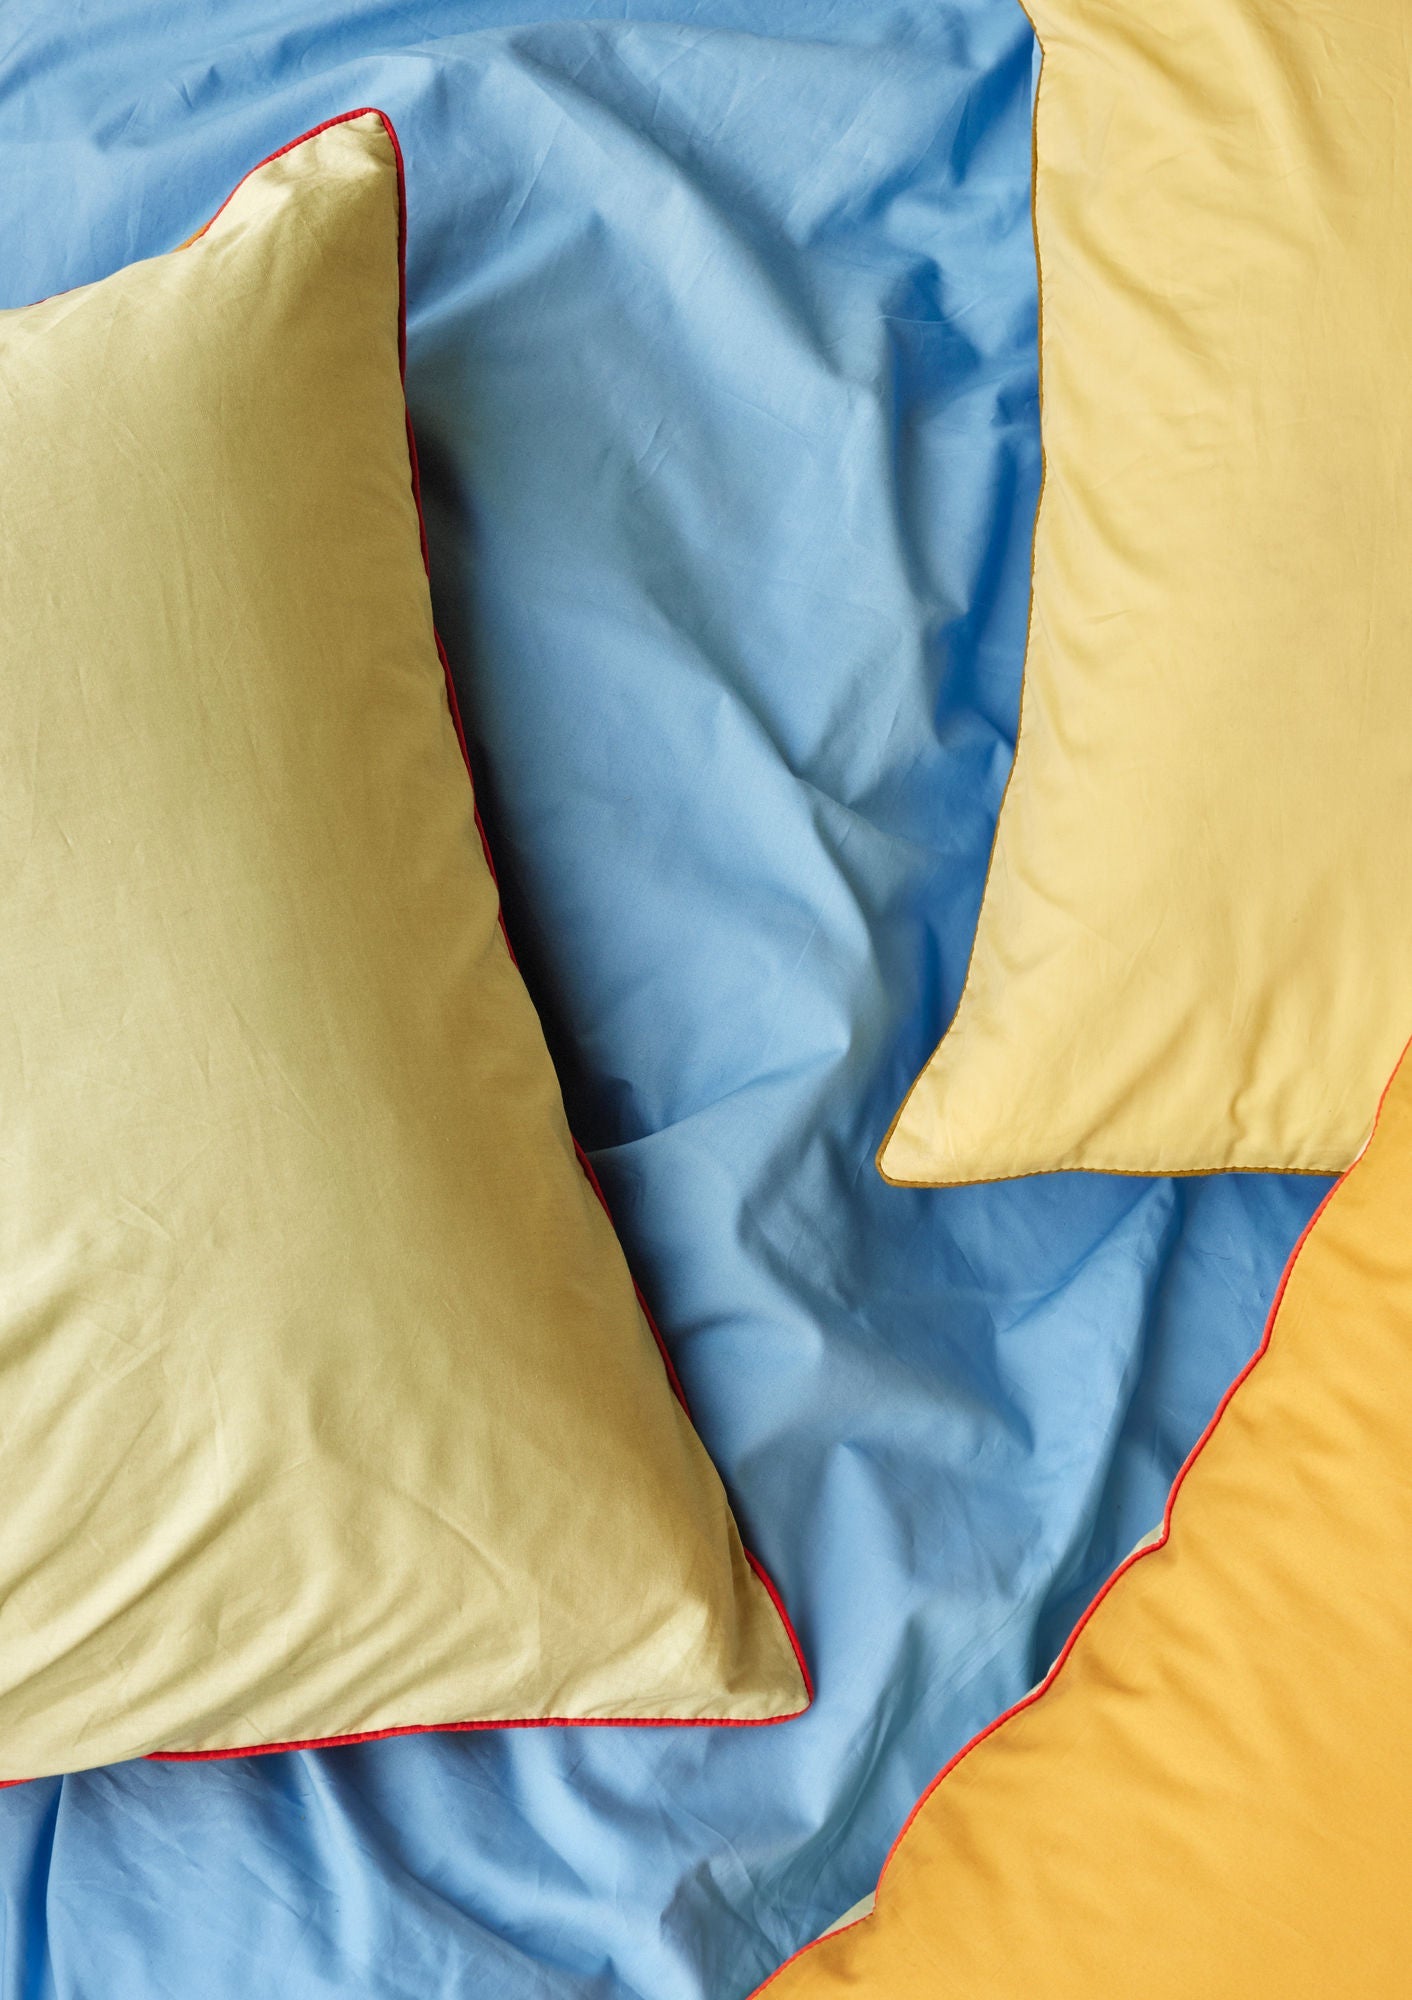 Hübsch Aki sängkläder 80/220 blå/gul